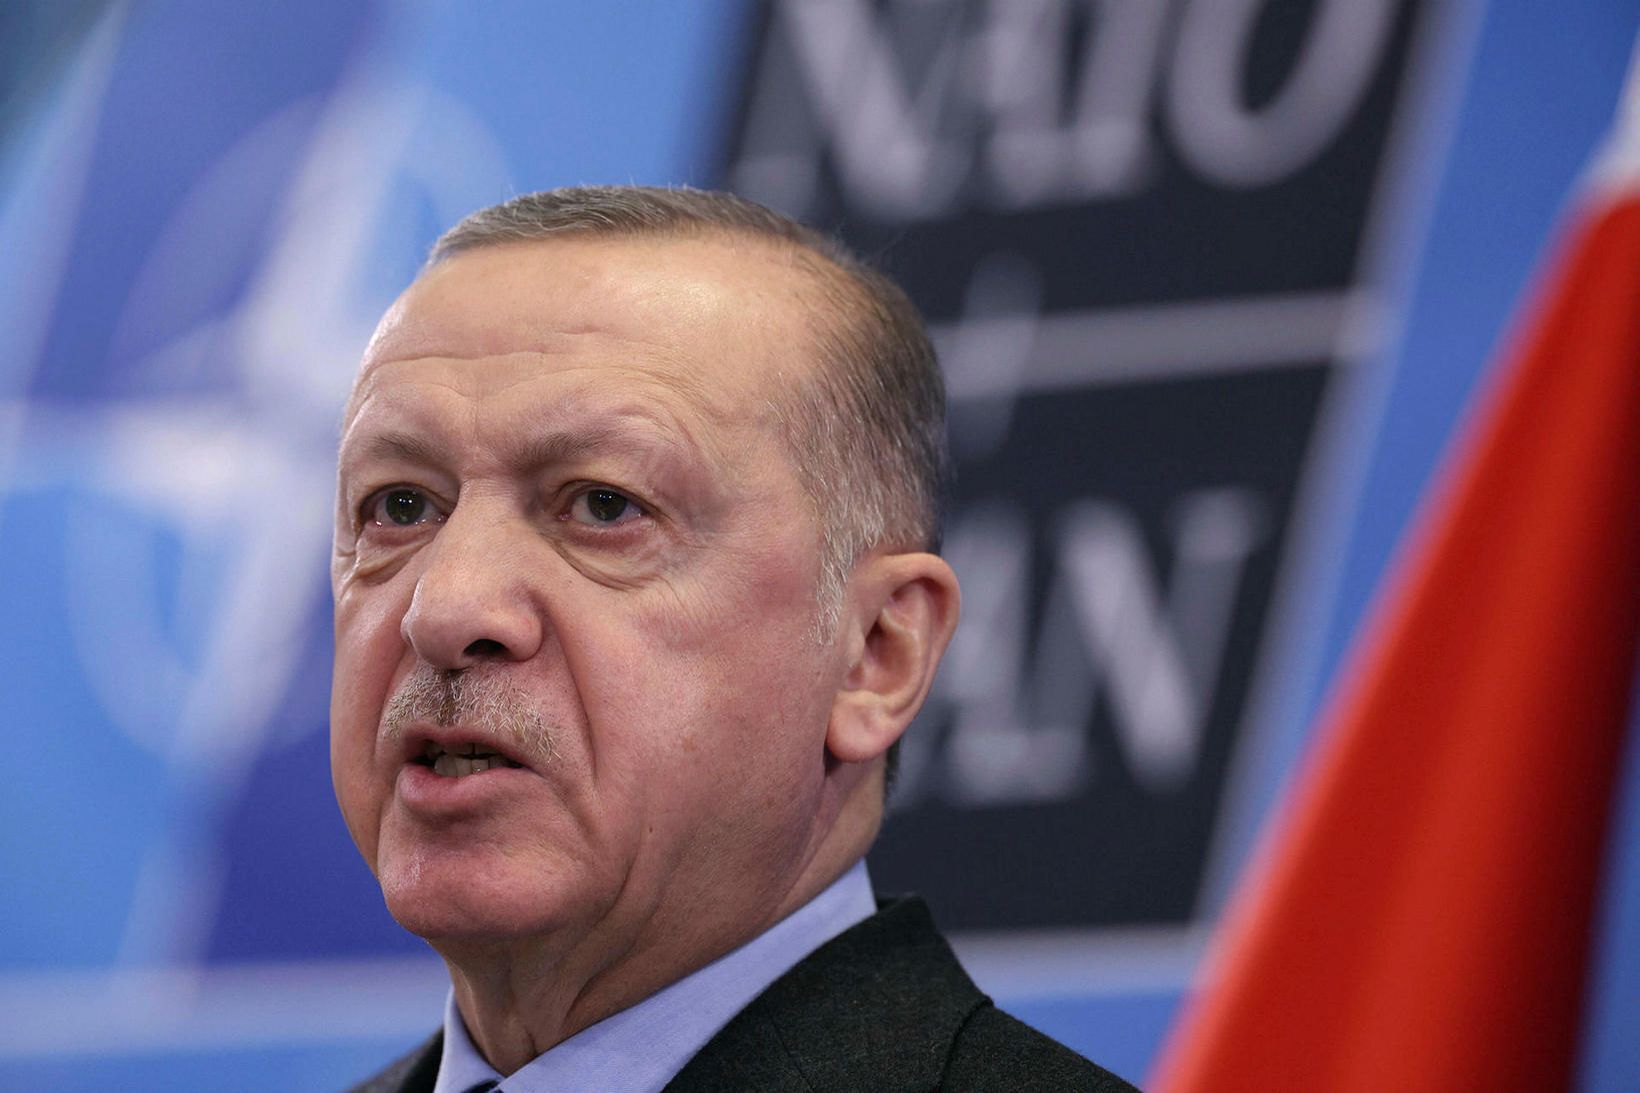 Erdogan, forseti Tyrklands, ávarpar fjölmiðla í gær á blaðamannafundi í …